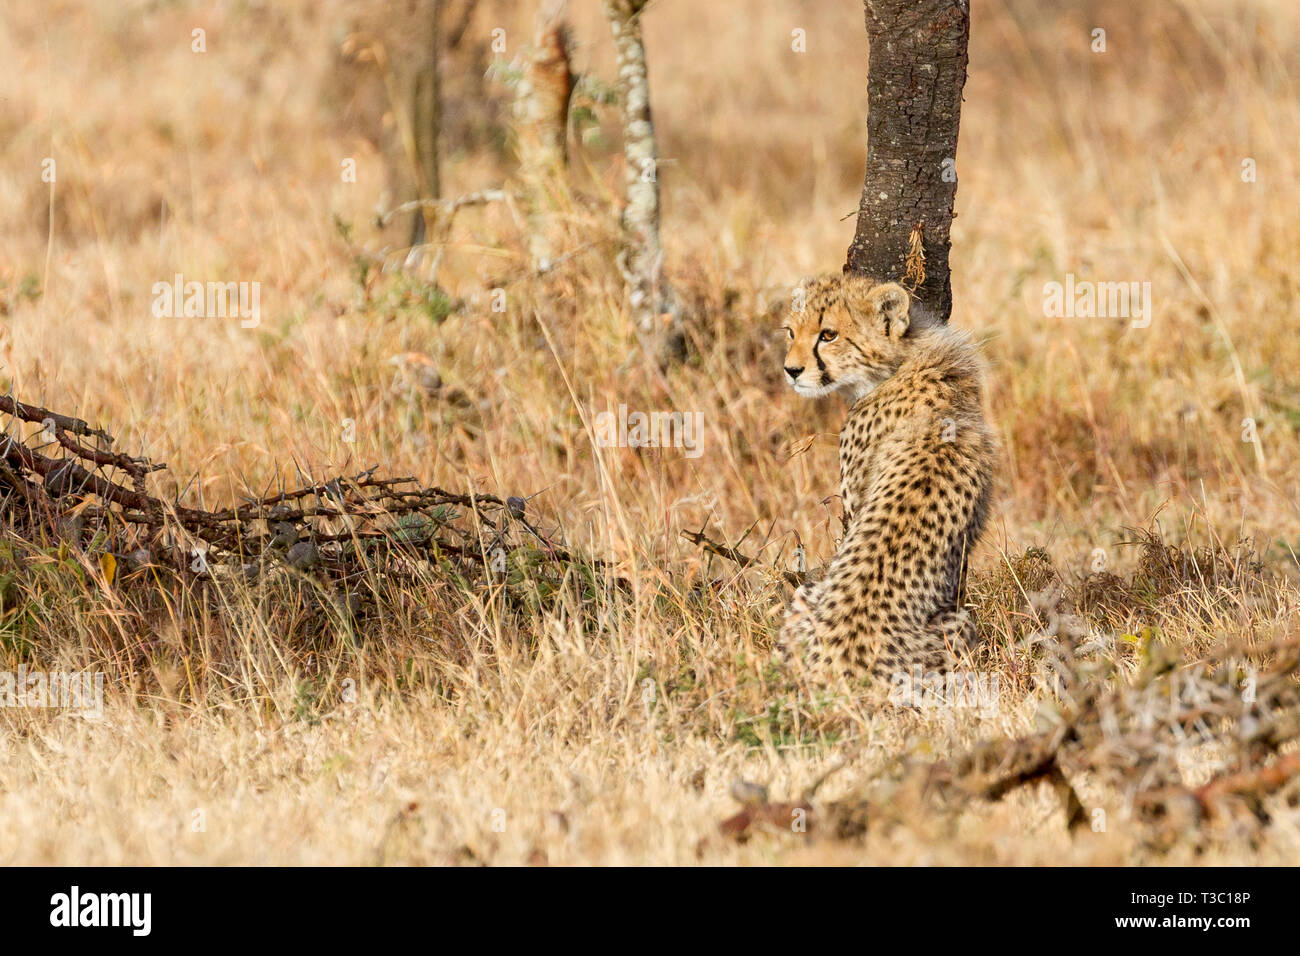 Un cheetah cub sentada y mirando hacia atrás por encima del hombro hacia su madre, Ol Pejeta Conservancy,Laikipia,Kenia,Africa Foto de stock